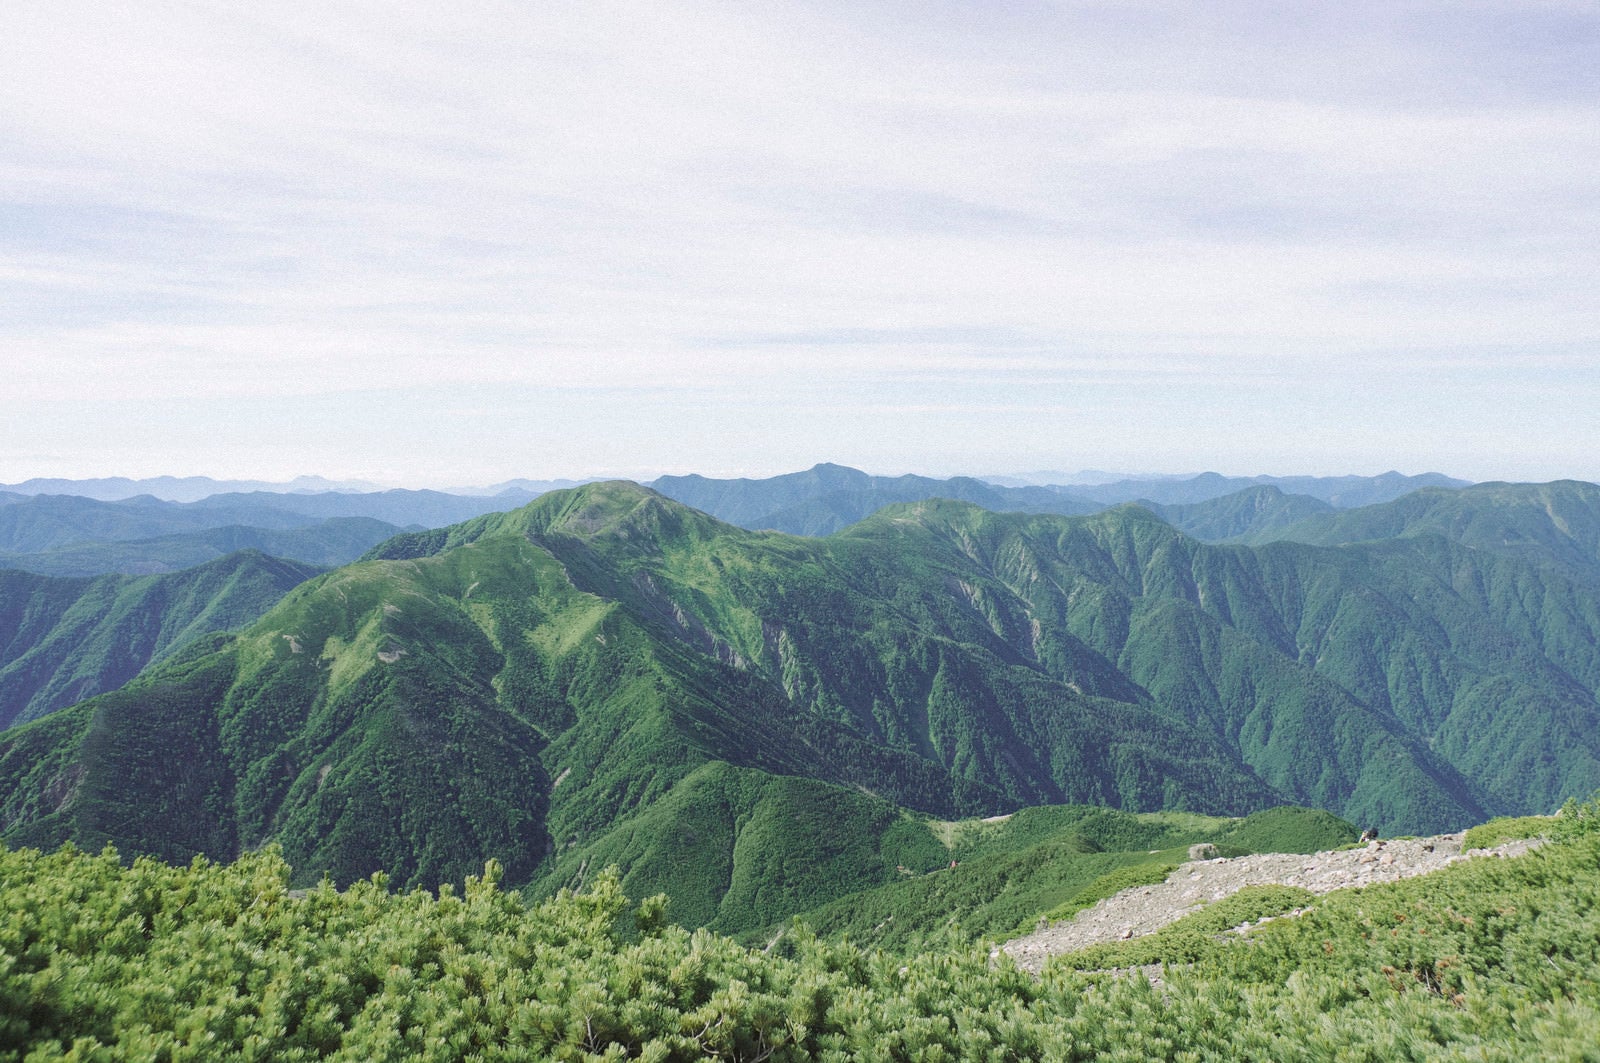 「聖岳山頂から見る南ア南部の山々の景色」の写真